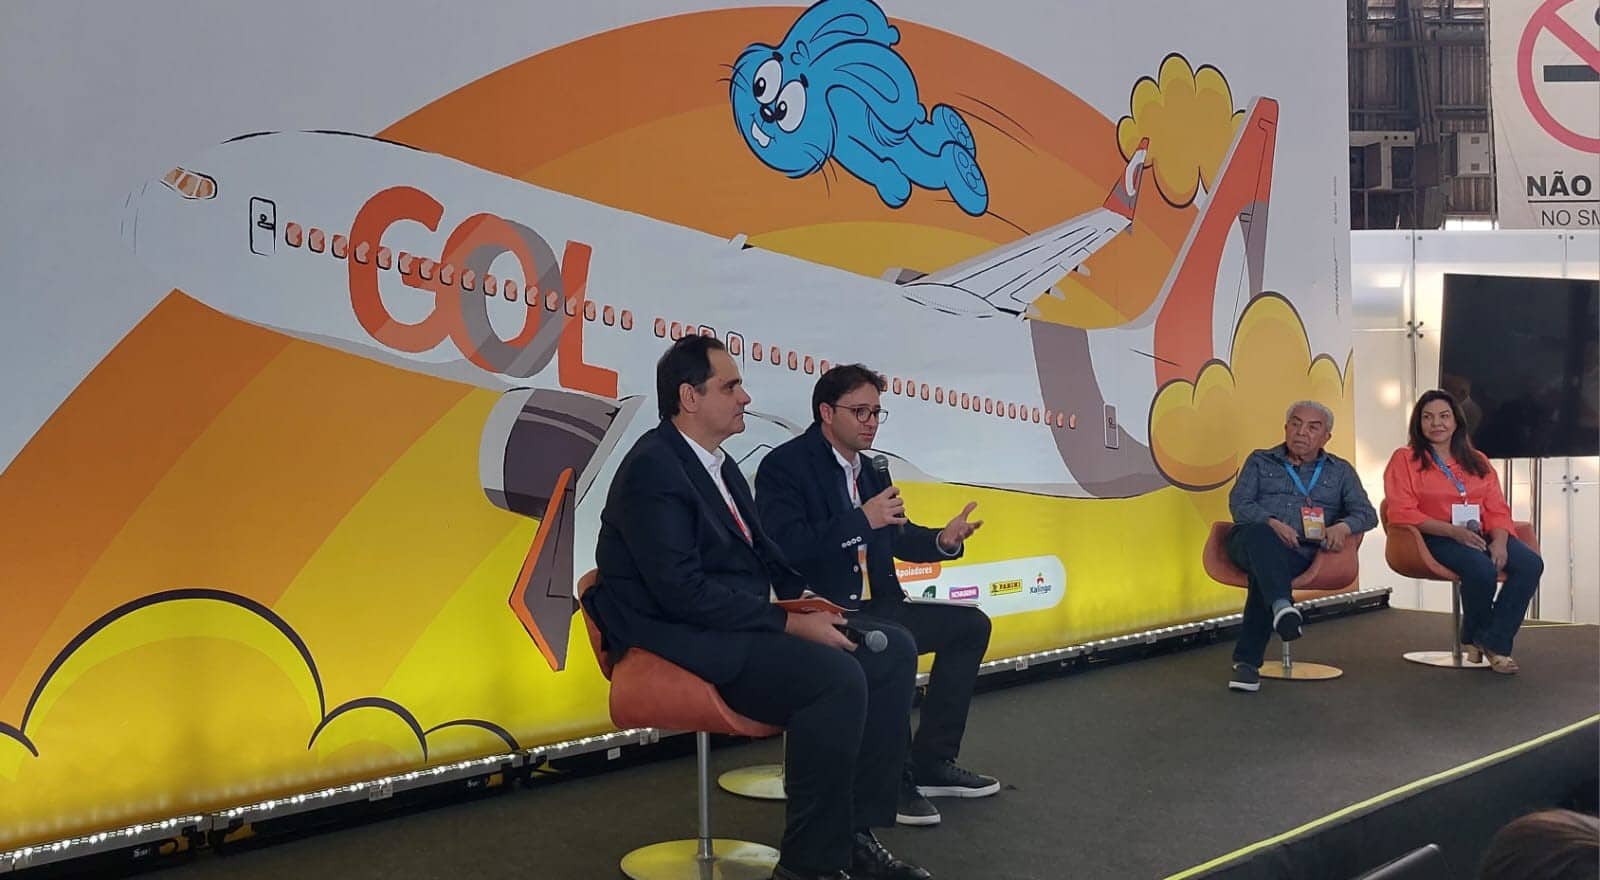 Vídeo: Gol celebra 60 anos da Turma da Mônica com avião temático - Ligado  no Sul